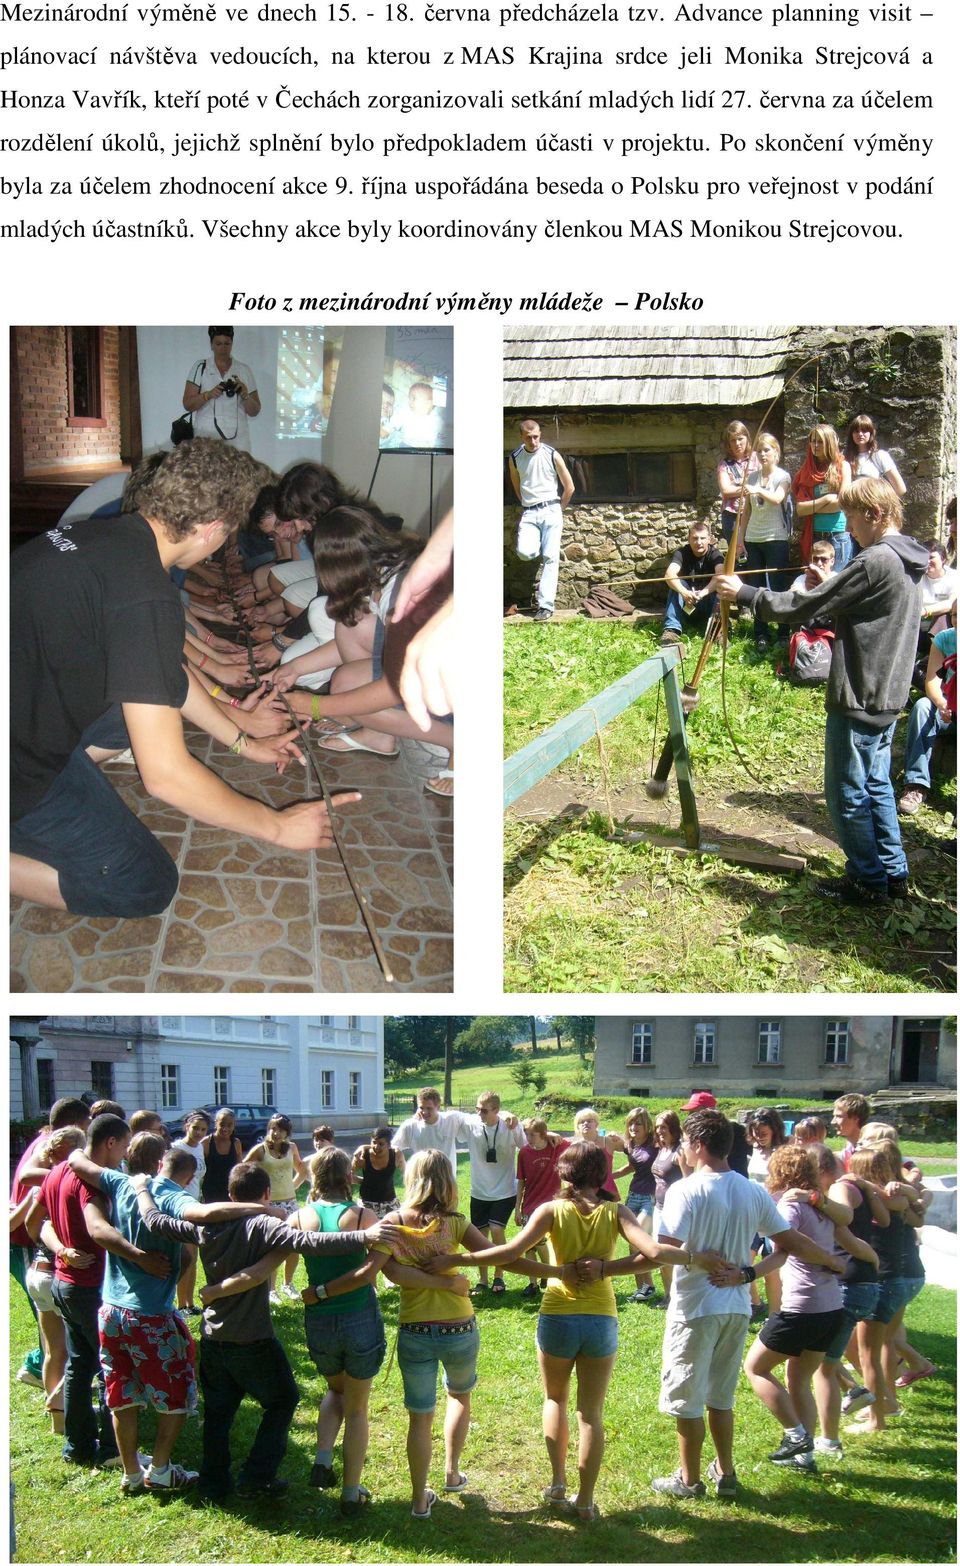 Čechách zorganizovali setkání mladých lidí 27. června za účelem rozdělení úkolů, jejichž splnění bylo předpokladem účasti v projektu.